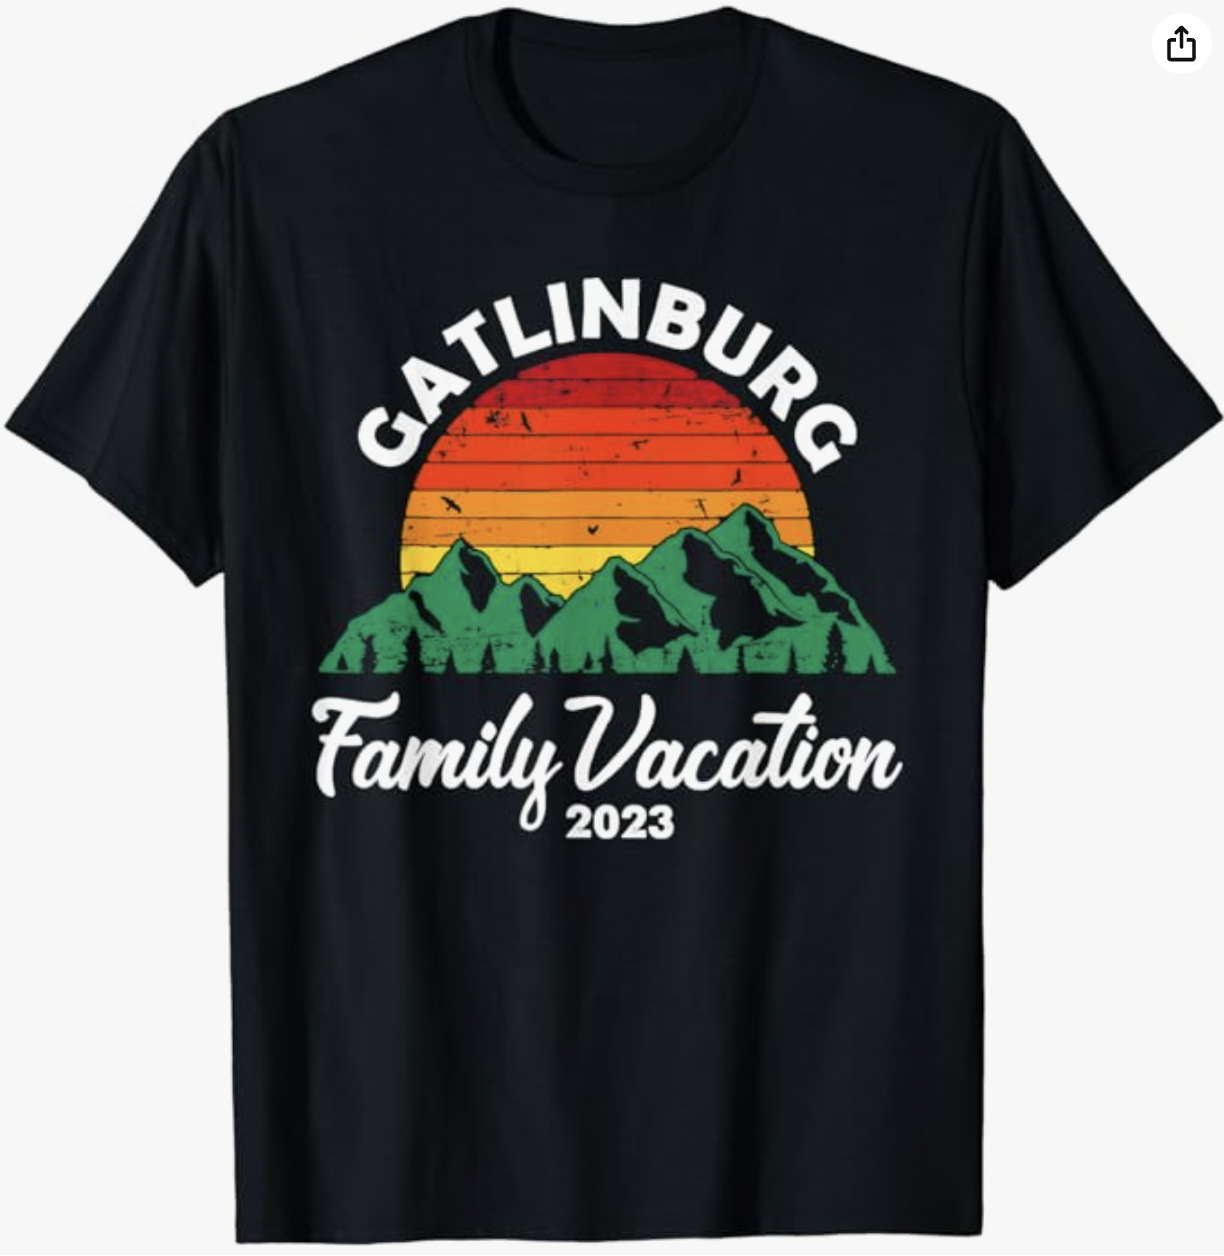 Gatlinburg Family Vacation Shirt